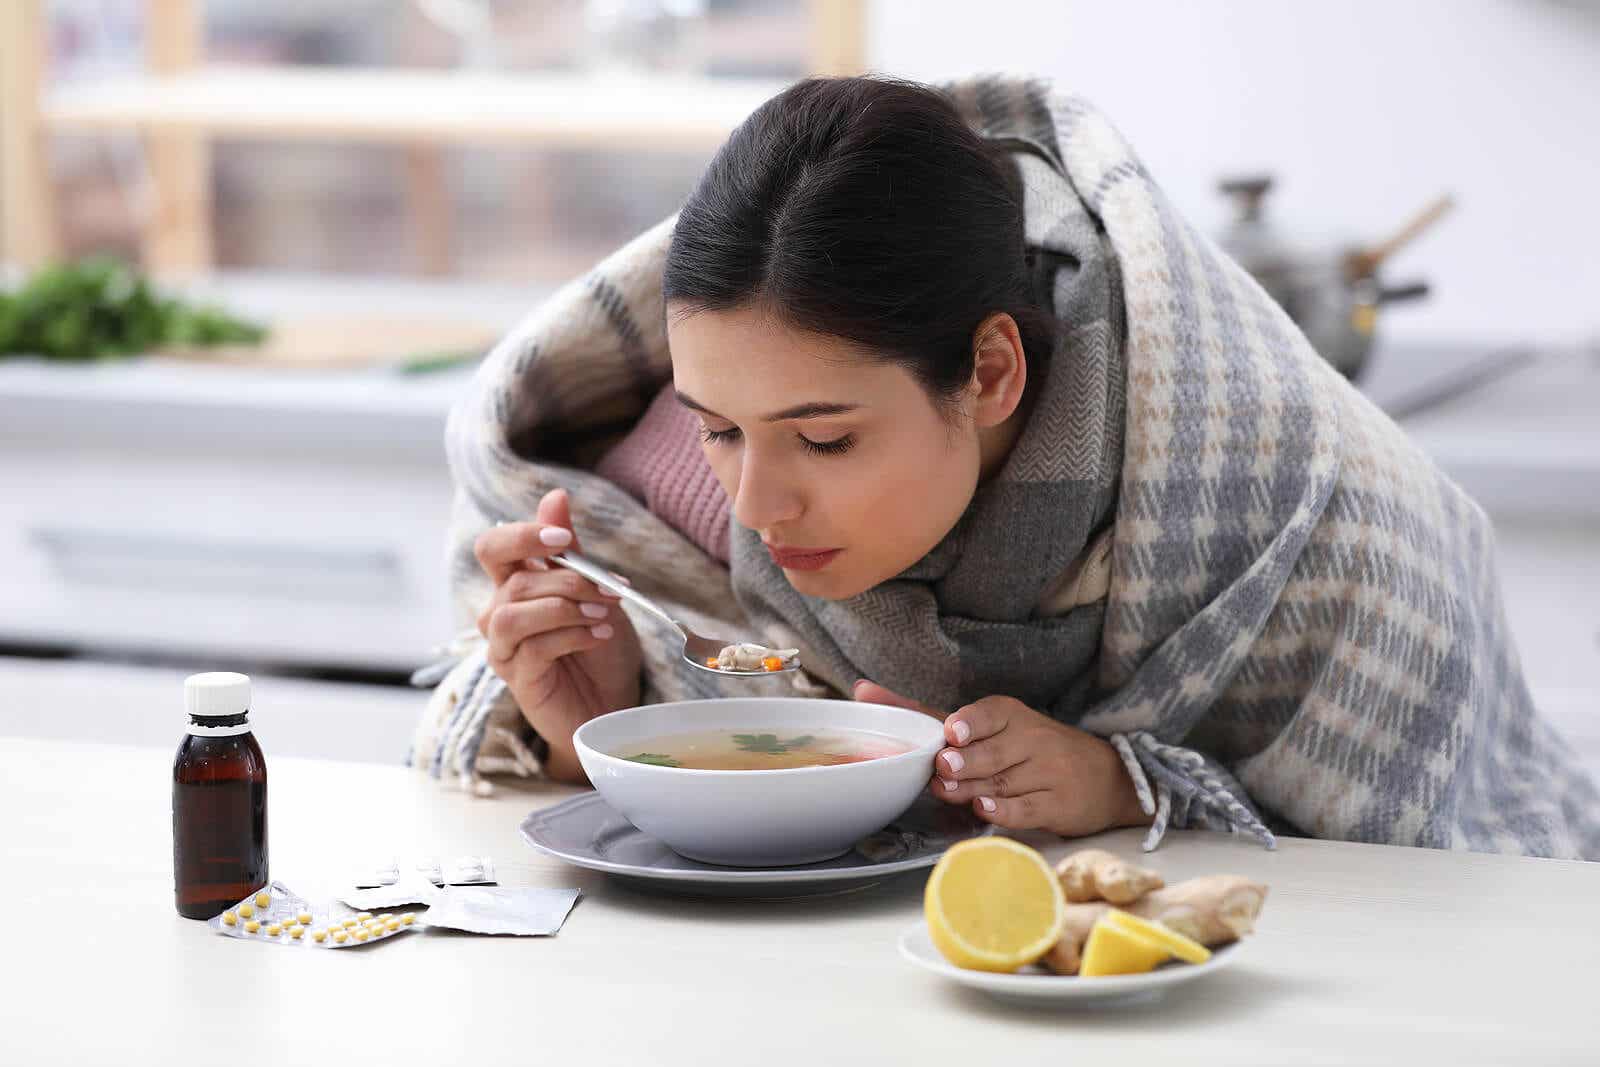 Femme avec la grippe mangeant de la soupe.